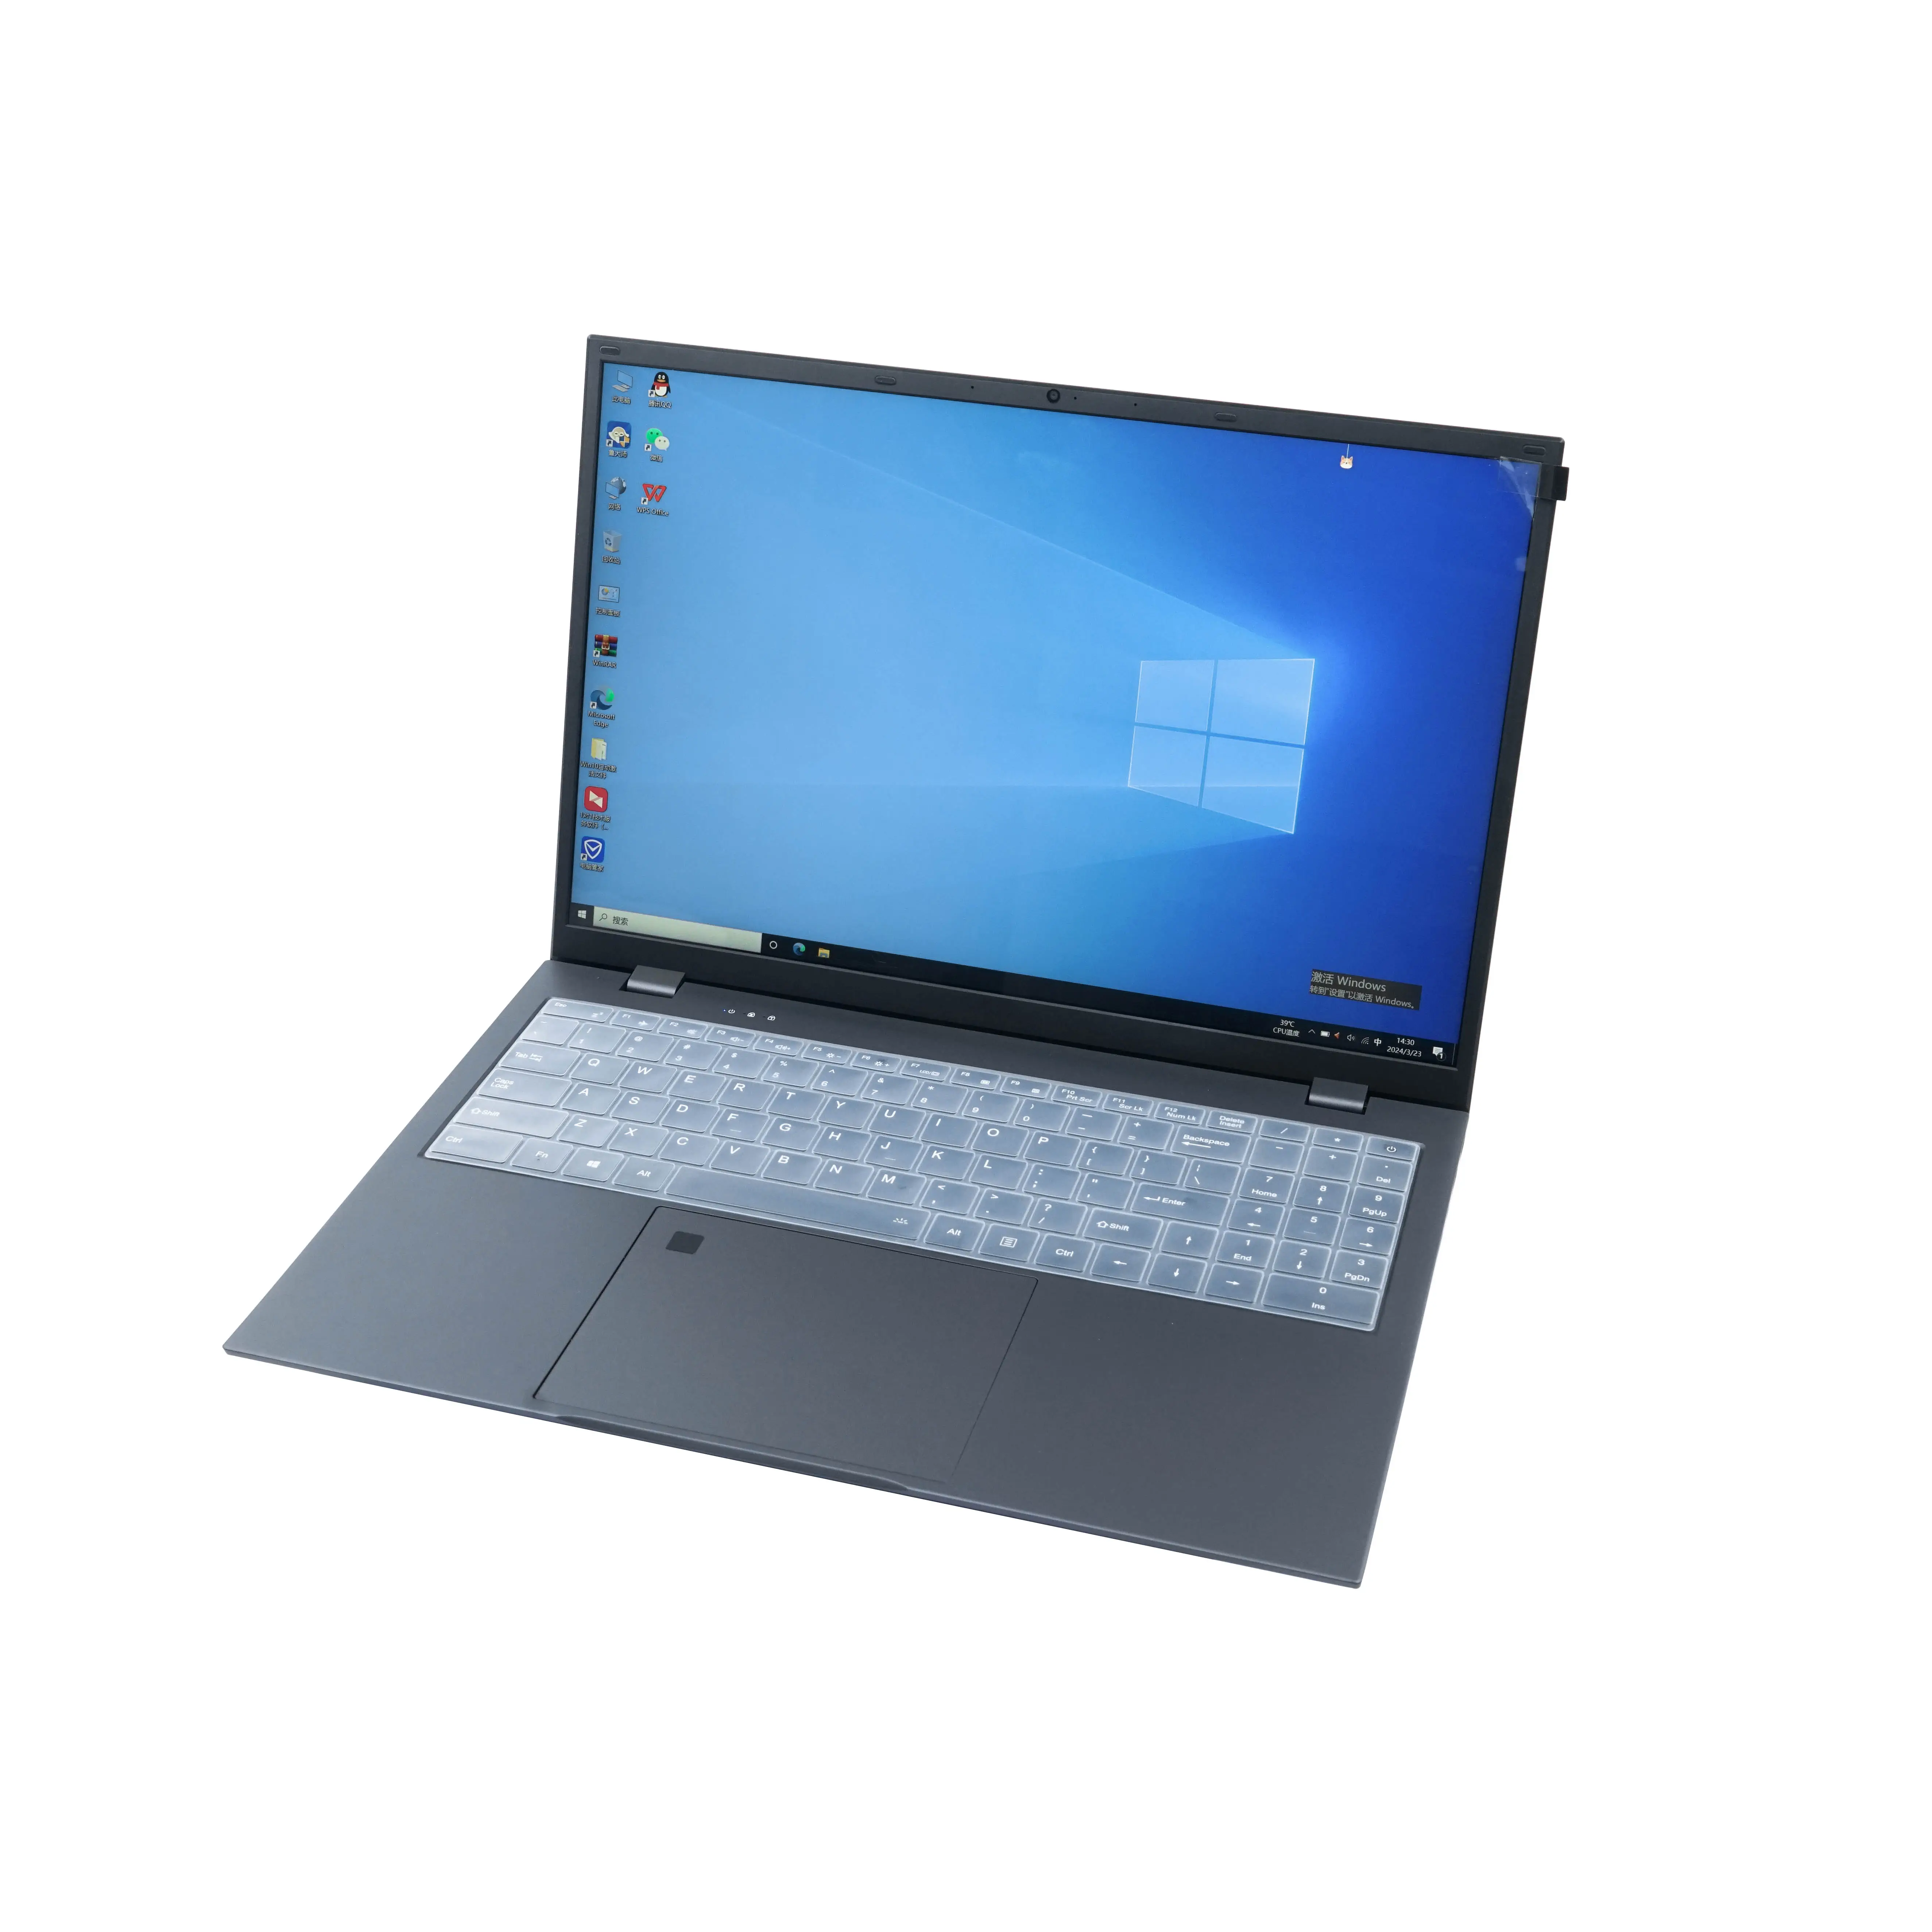 사용자 정의 휴대용 PC 컴퓨터 15.6 인치 11 세대 쿼드 코어 프로세서 코어 i7 노트북 그래픽 디자인을위한 11 번째 비즈니스 노트북